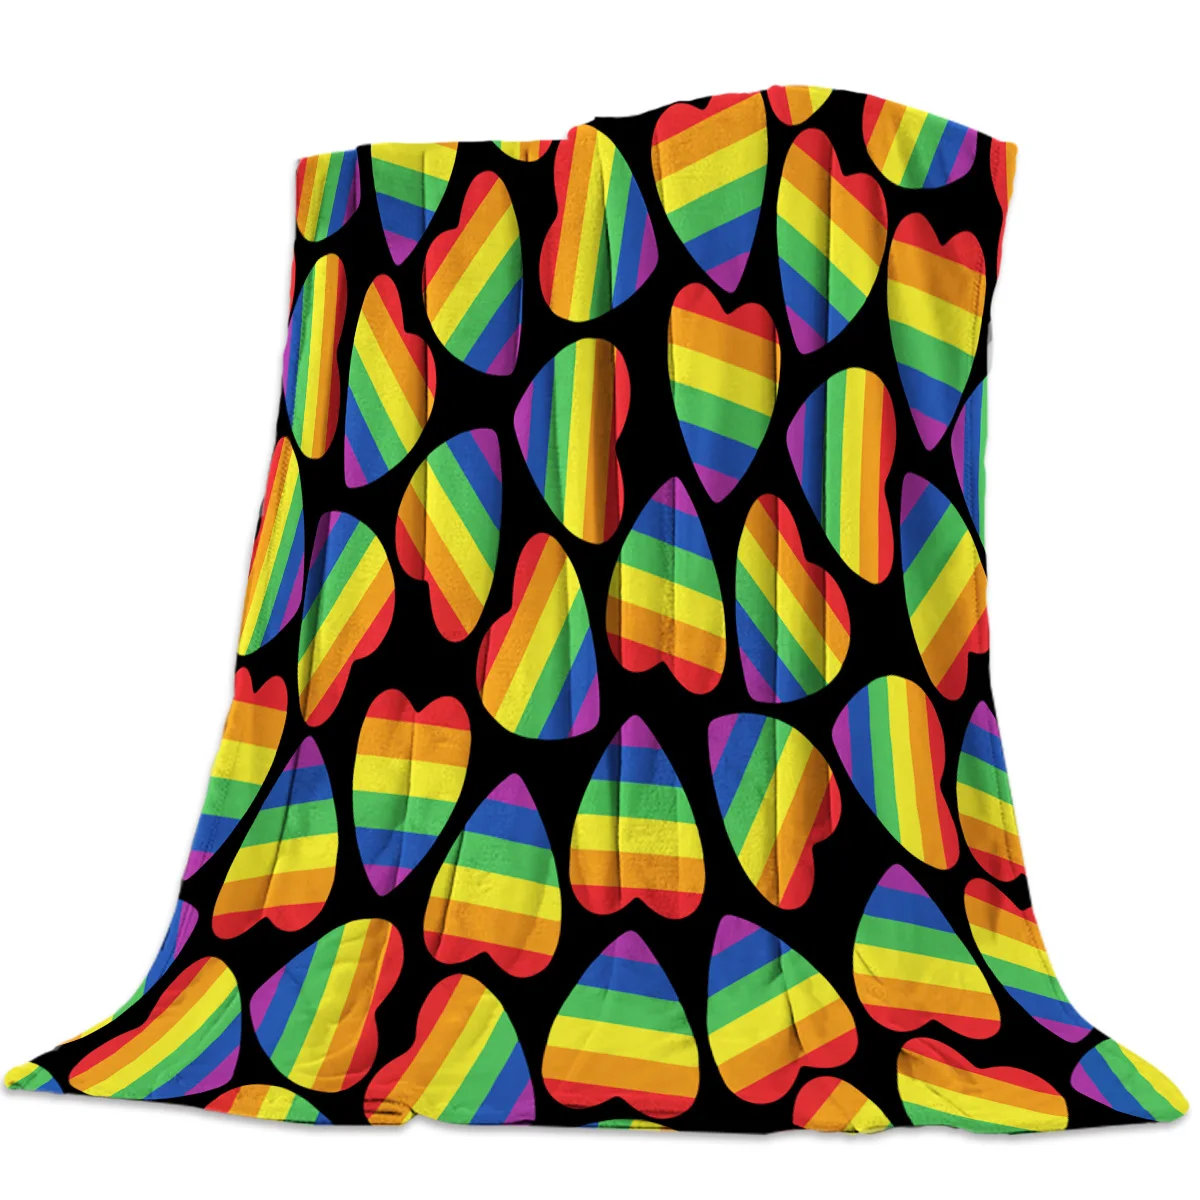 

Мягкое теплое Флисовое одеяло, ЛГБТ гордость, радуга, любовь, зимнее покрывало, покрывало для дивана, легкие тонкие фланелевые одеяла